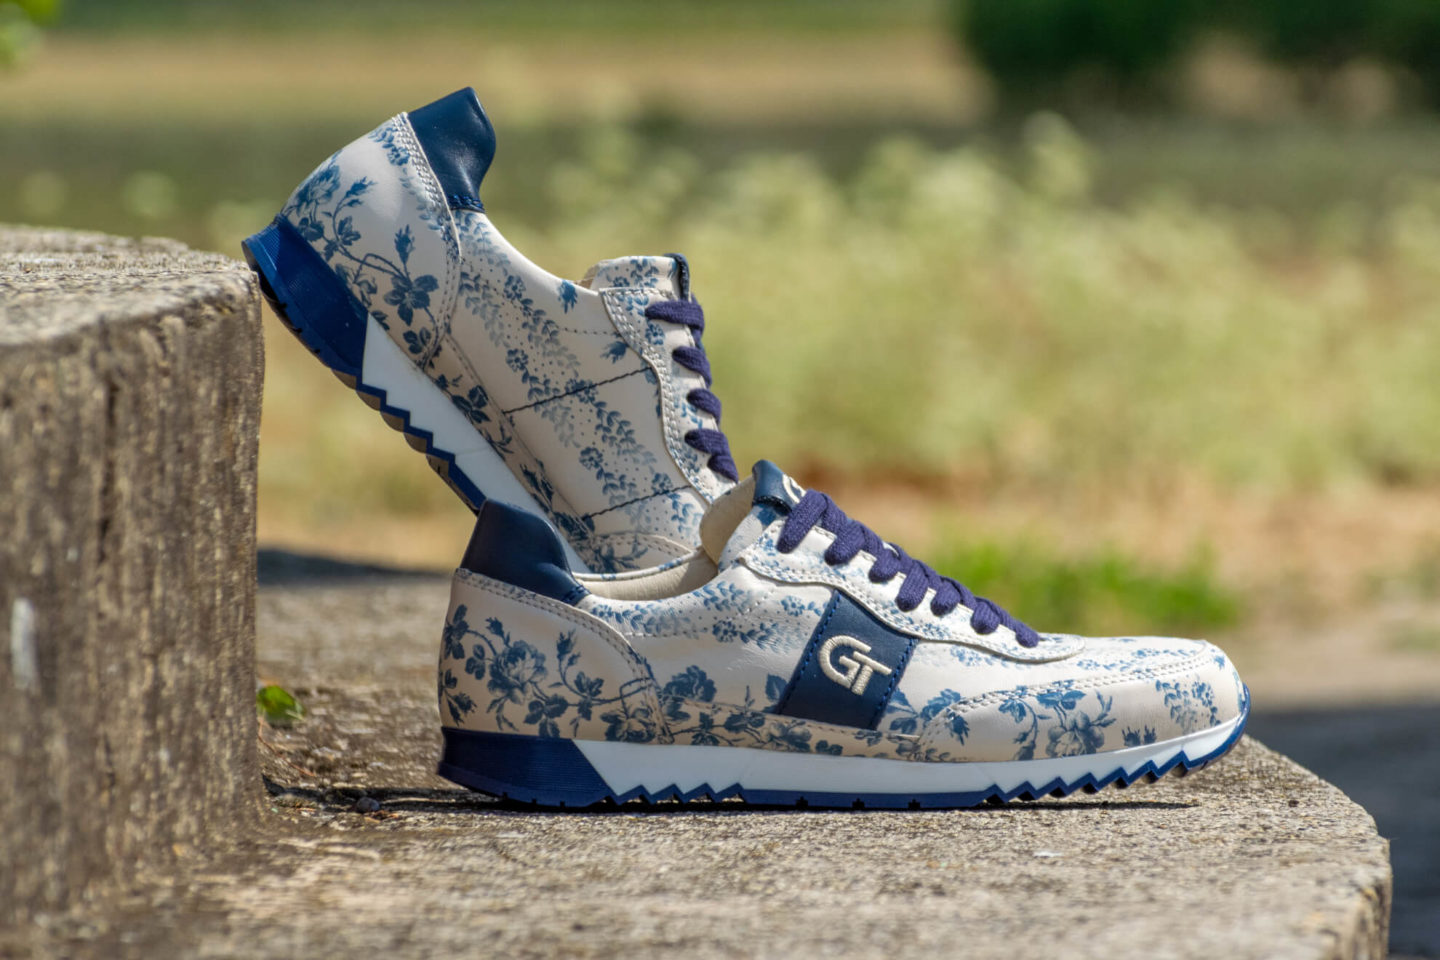 G&T Aktív Kék virág - Óceán bőr sportcipő